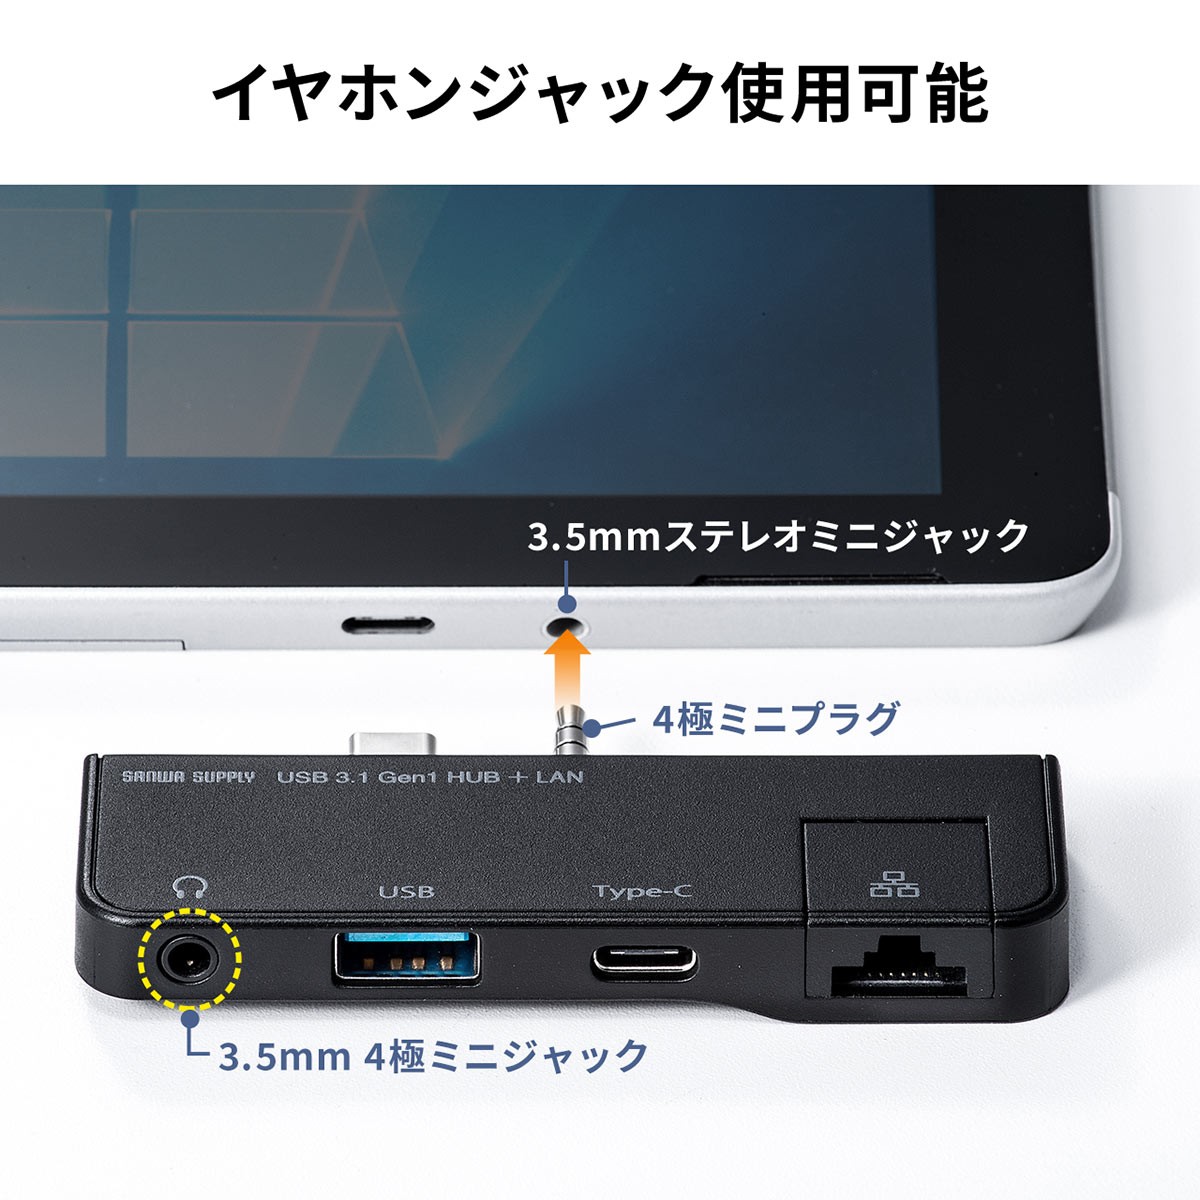 もらって嬉しい出産祝い Surface Go 専用 Go3 USBハブ 有線LANポート 増設 USB3.1 Gen1 USB3.0 ハブ サーフェス  ゴー Type-C USB-A 3.5mm 4極ミニジャック バスパワー columbiatools.com